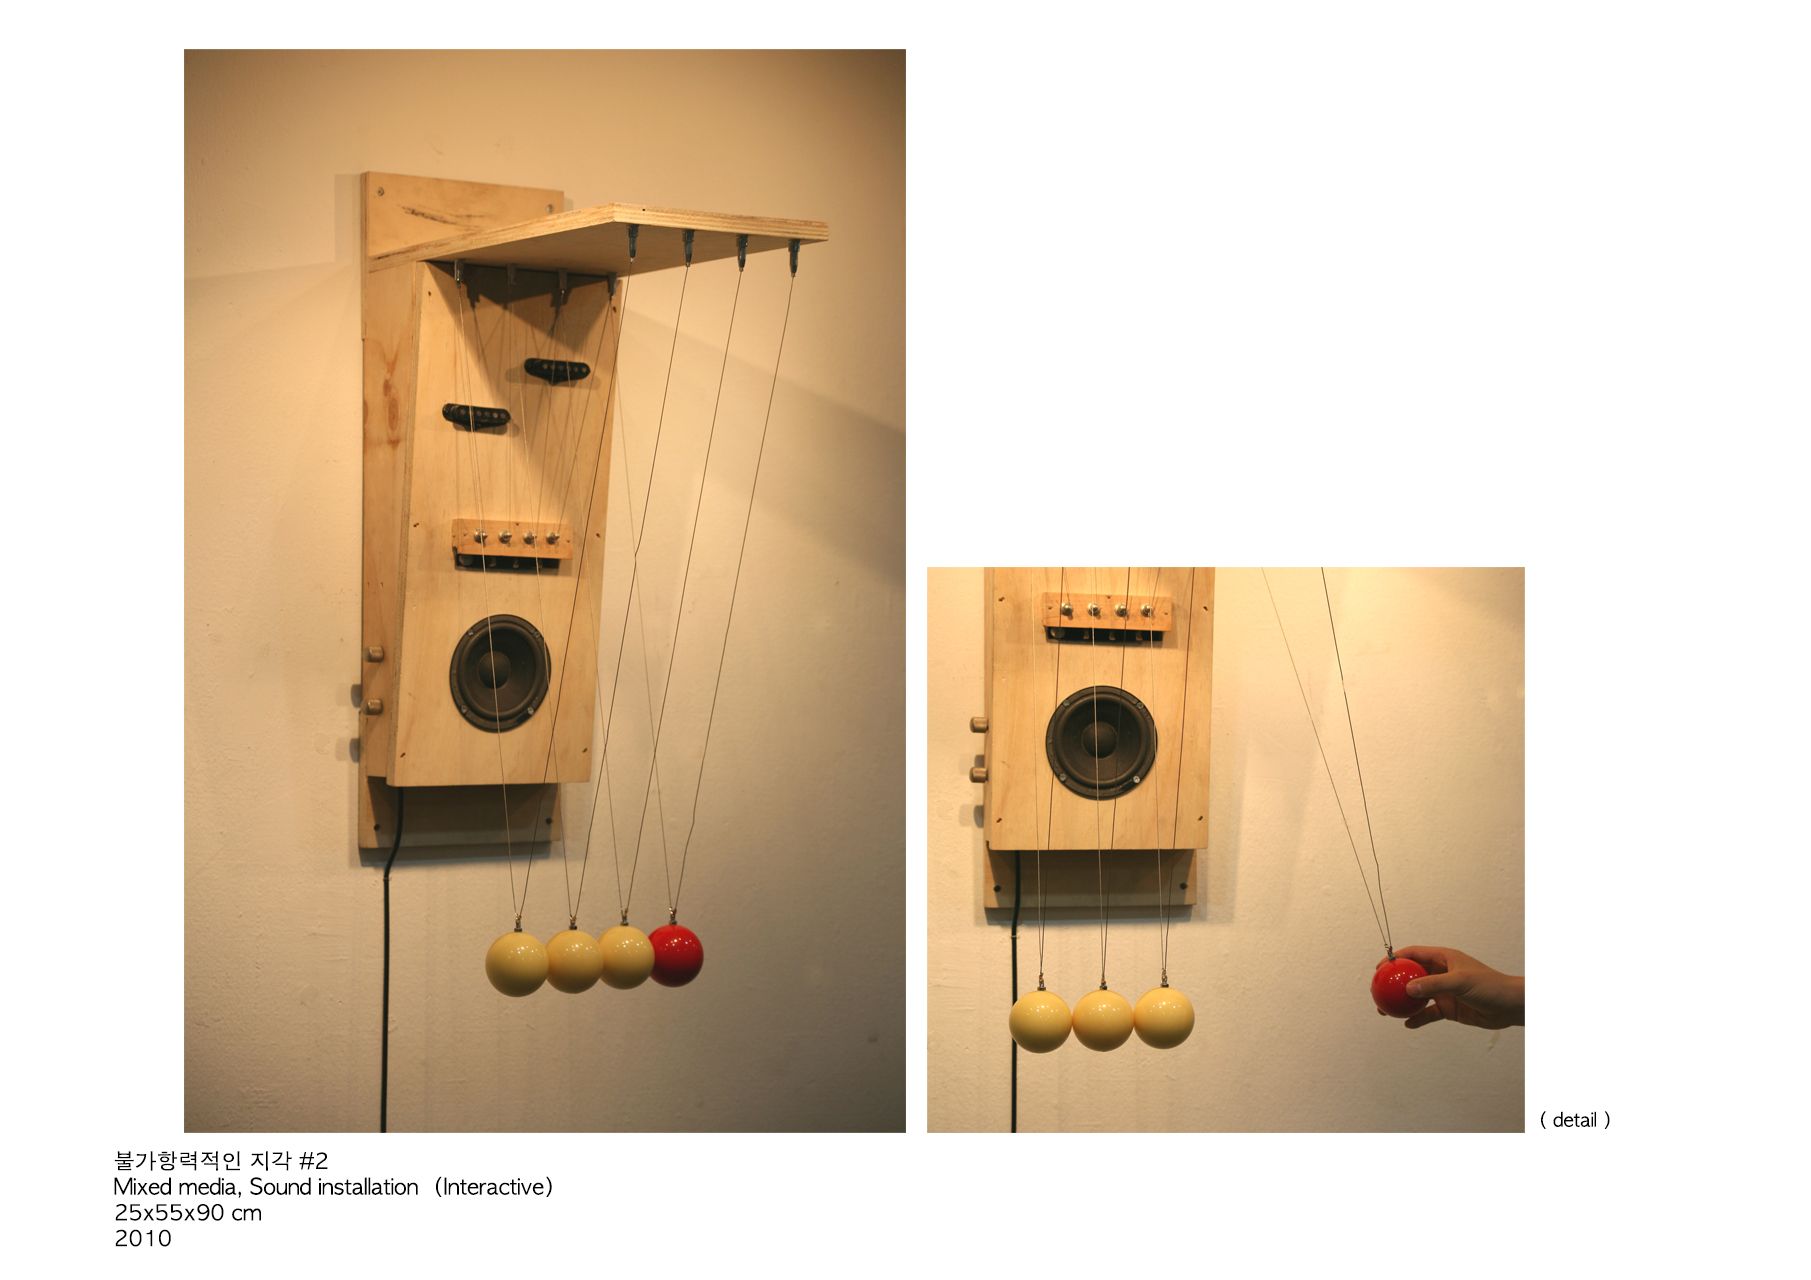 불가항력적인 지각 #2_mixed media, sound installation(Interactive)_25x55x90cm_2010